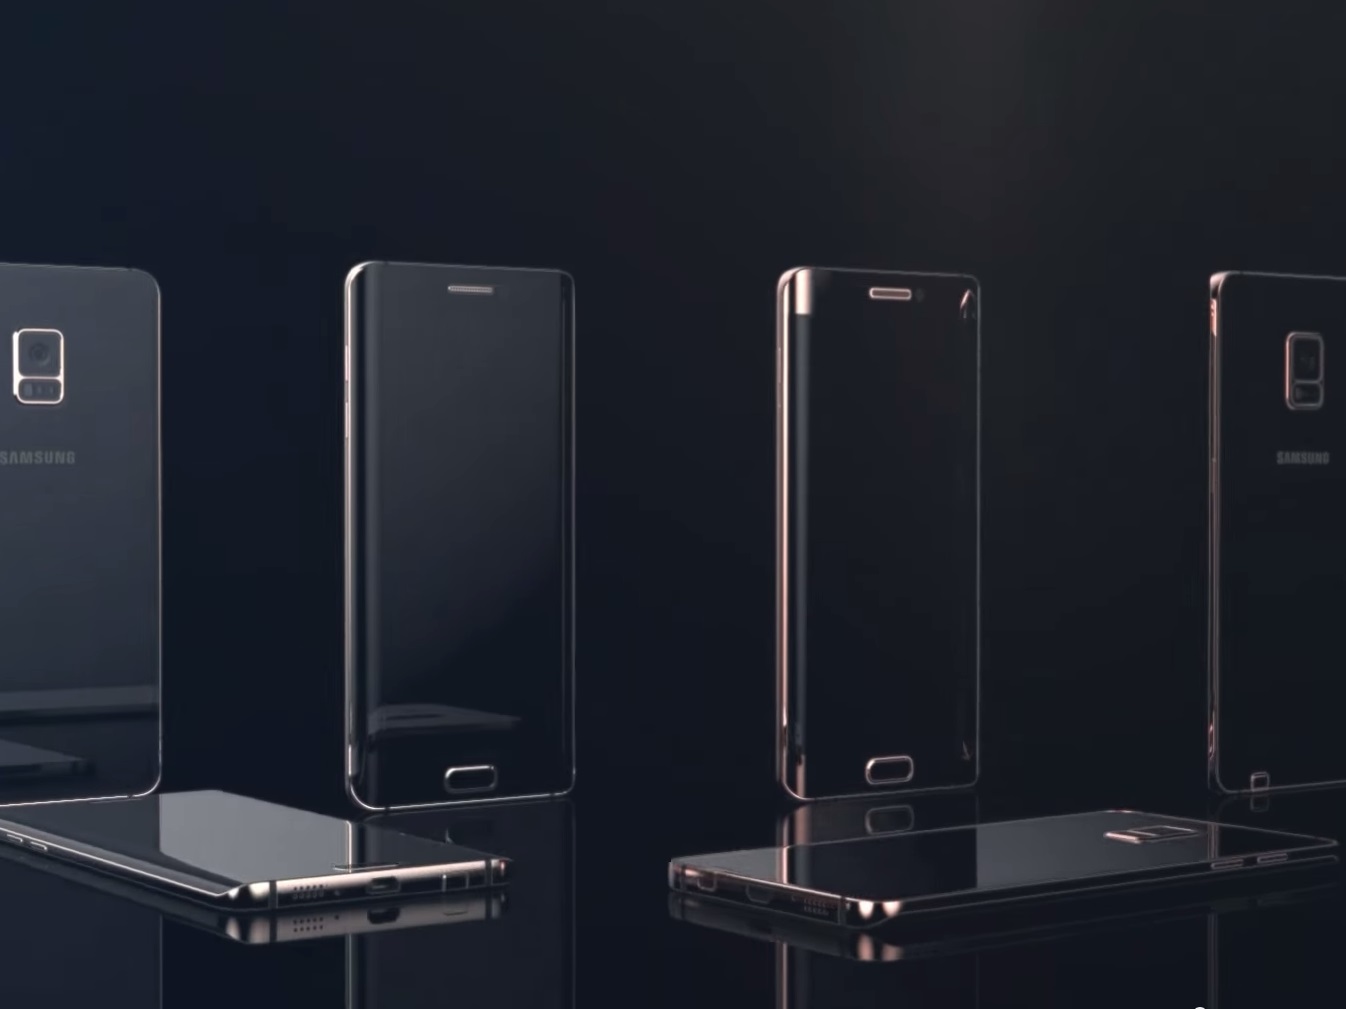 Samsung-Galaxy-Note-5-edge-renders-6